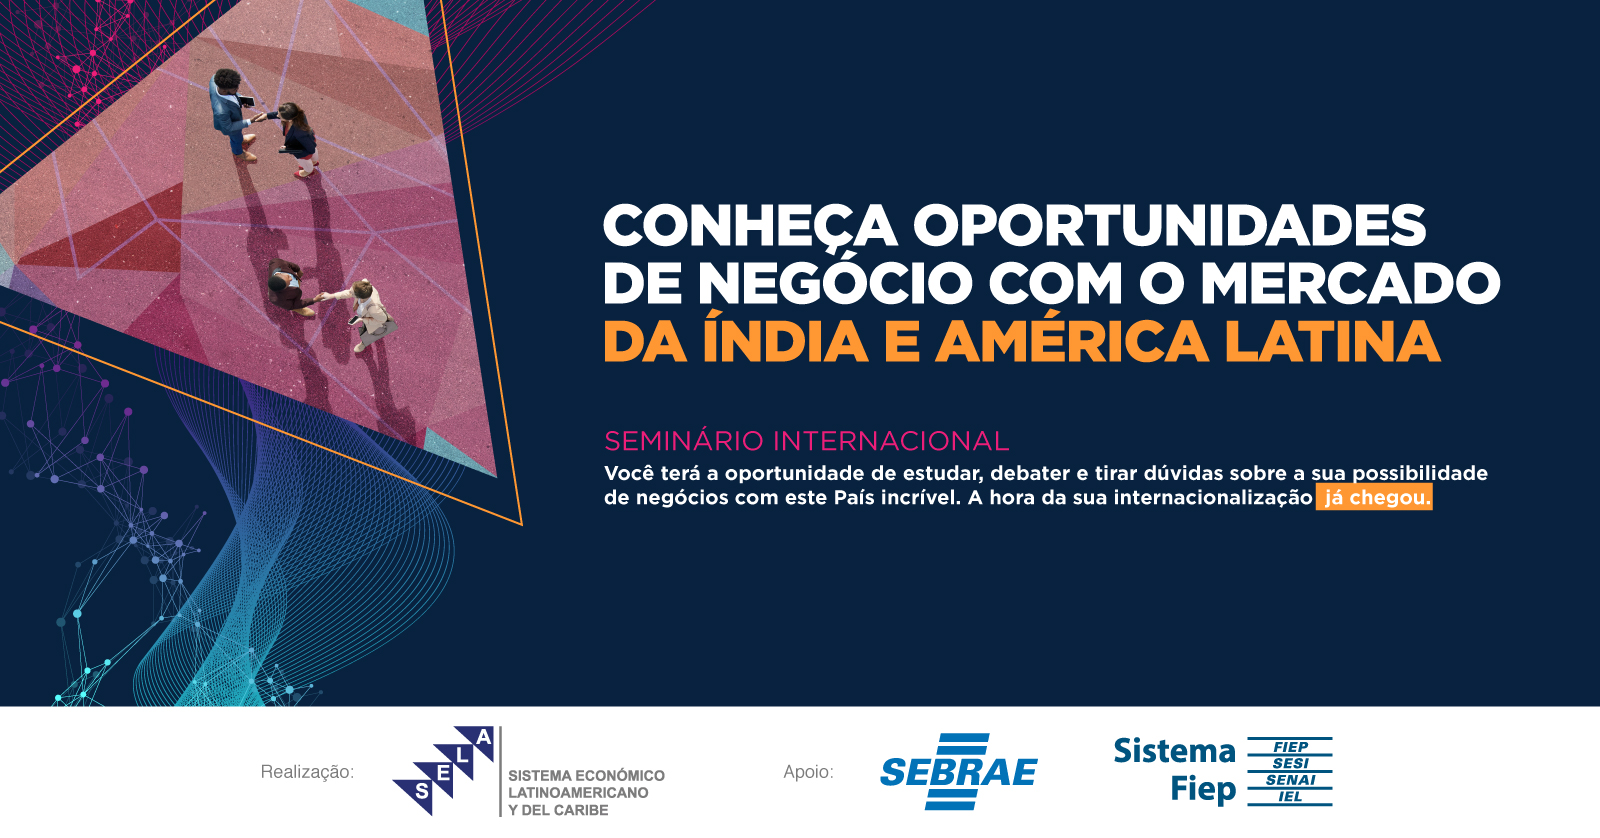 Las Pymes latinoamericanas conocerán las oportunidades comerciales con la India en seminario organizado por el SELA